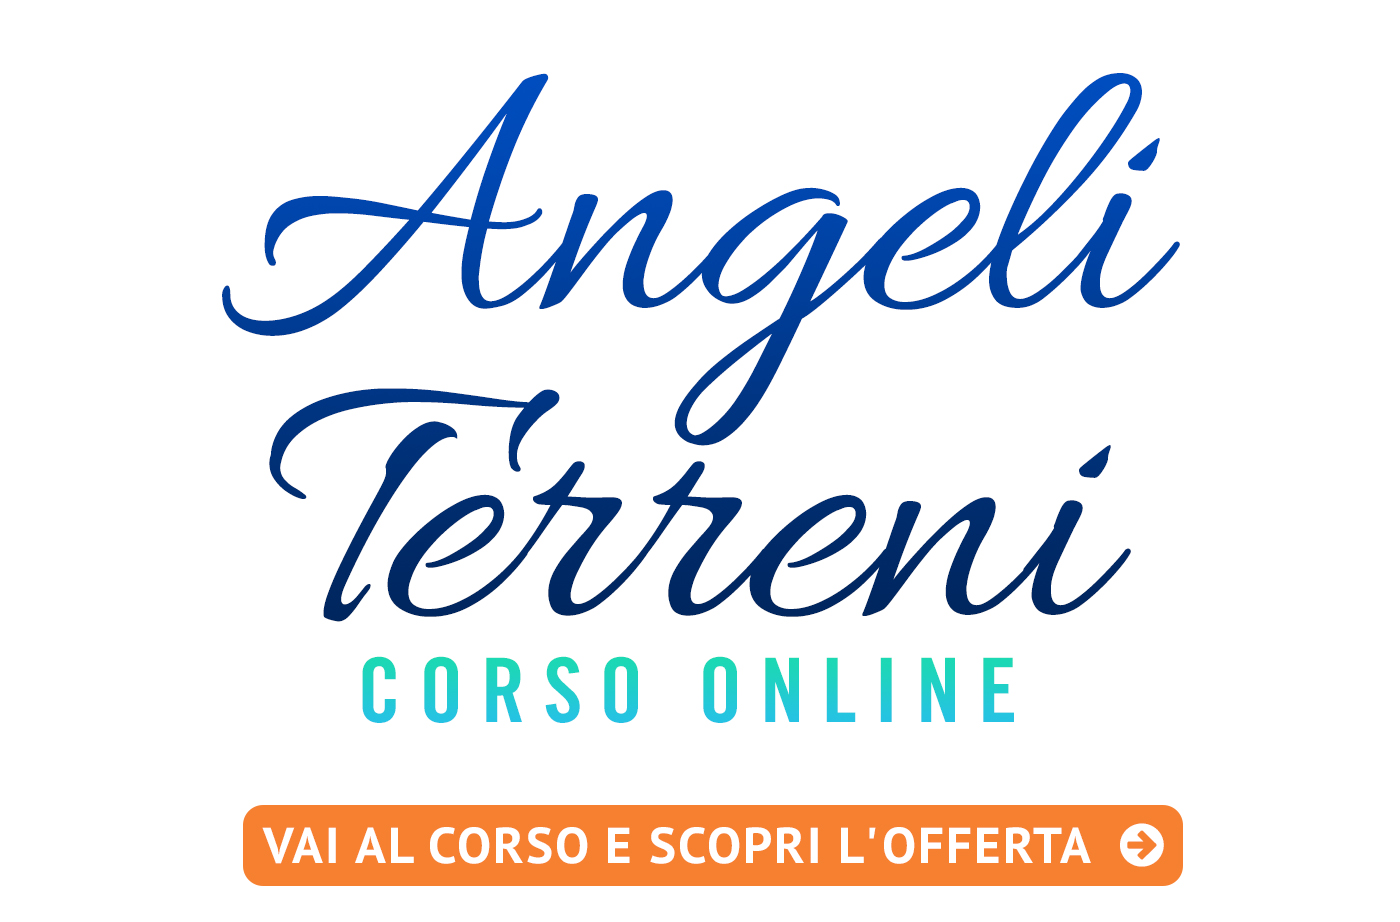 Corso di Certificazione in Angeli Terreni - Corso Online